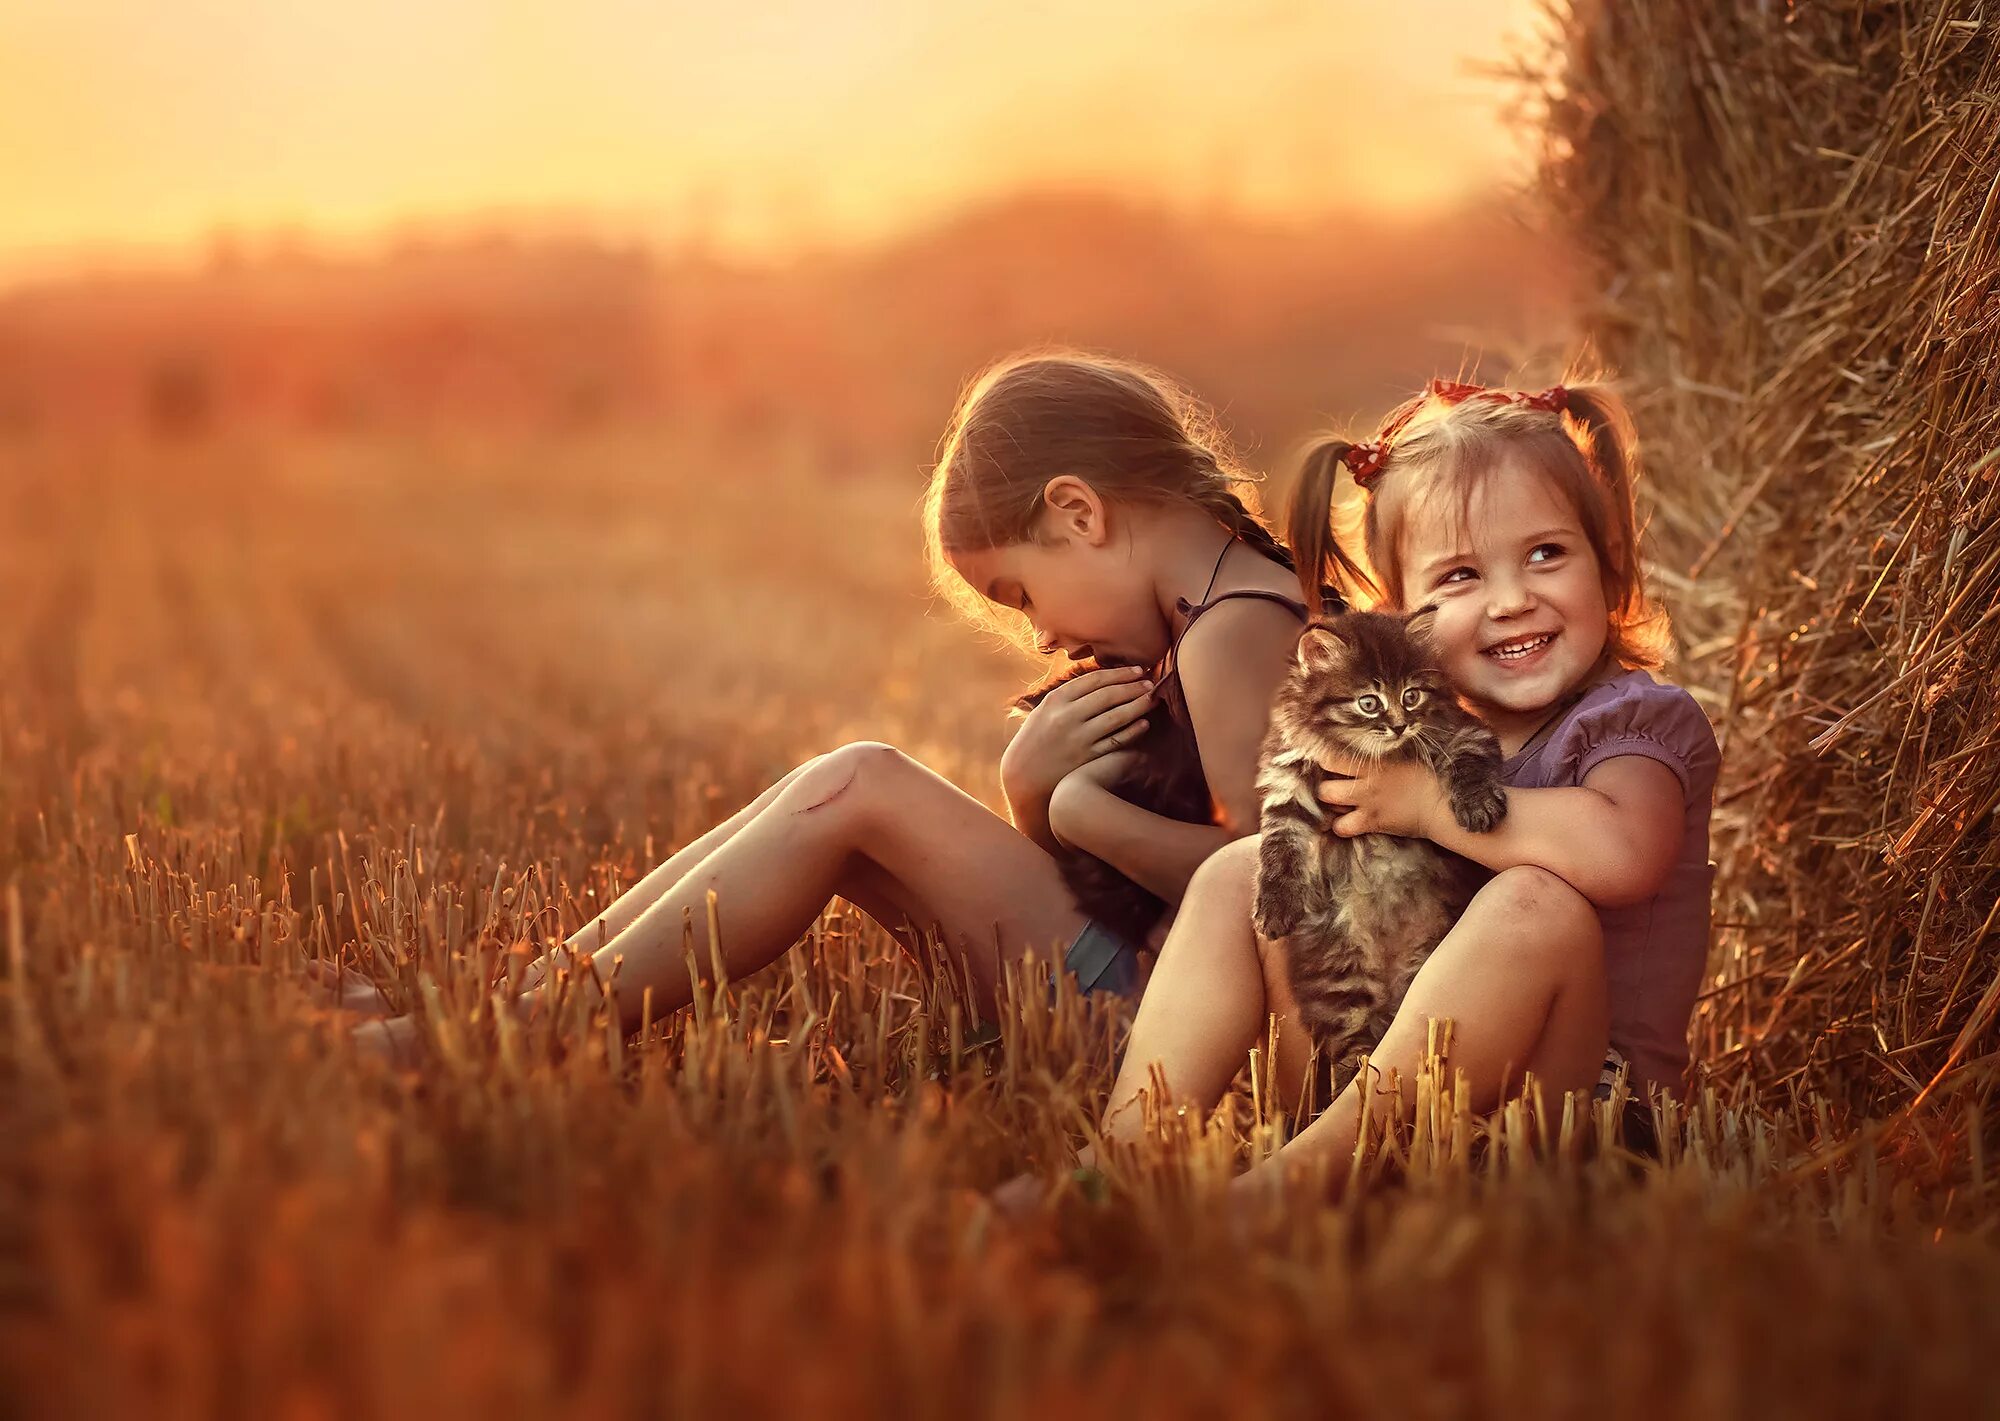 Field children. Счастливые дети в деревне. Дети в поле. Дети обнимаются в поле. Фотосессия на закате в поле семейная.